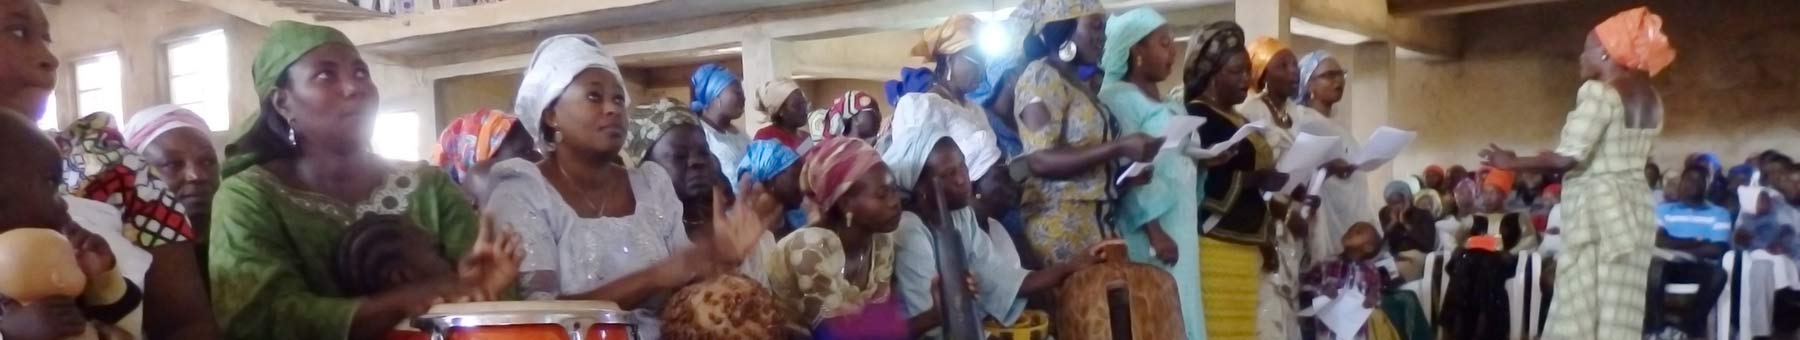 nigerian congregation worshipping